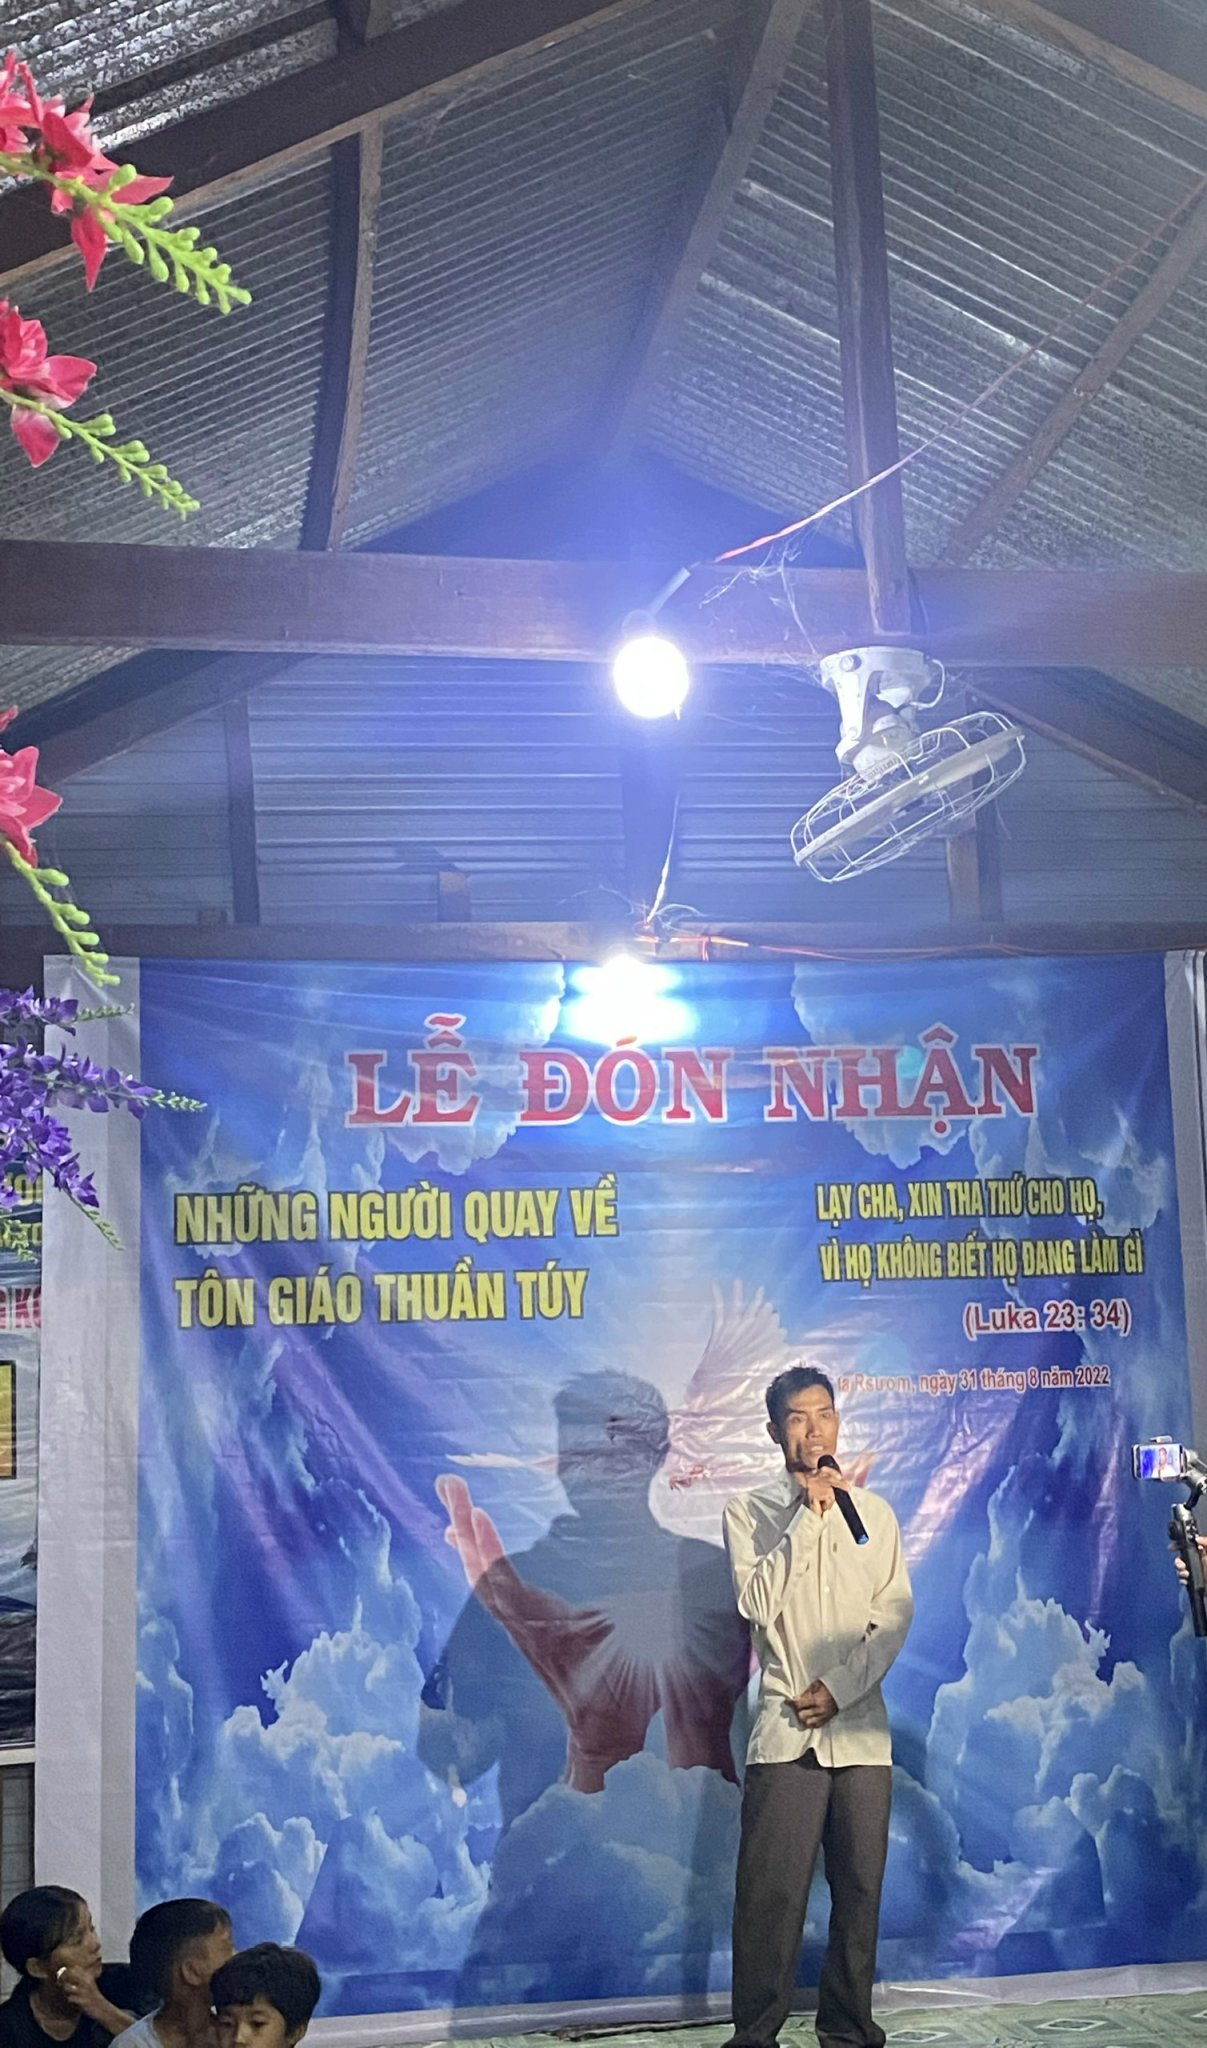 Điểm nhóm Tin Lành truyền giảng Phúc Âm buôn Toát, xã Ia Rrươm, huyện Krông Pa tổ chức đón nhận người bỏ “Tin Lành Đề ga “